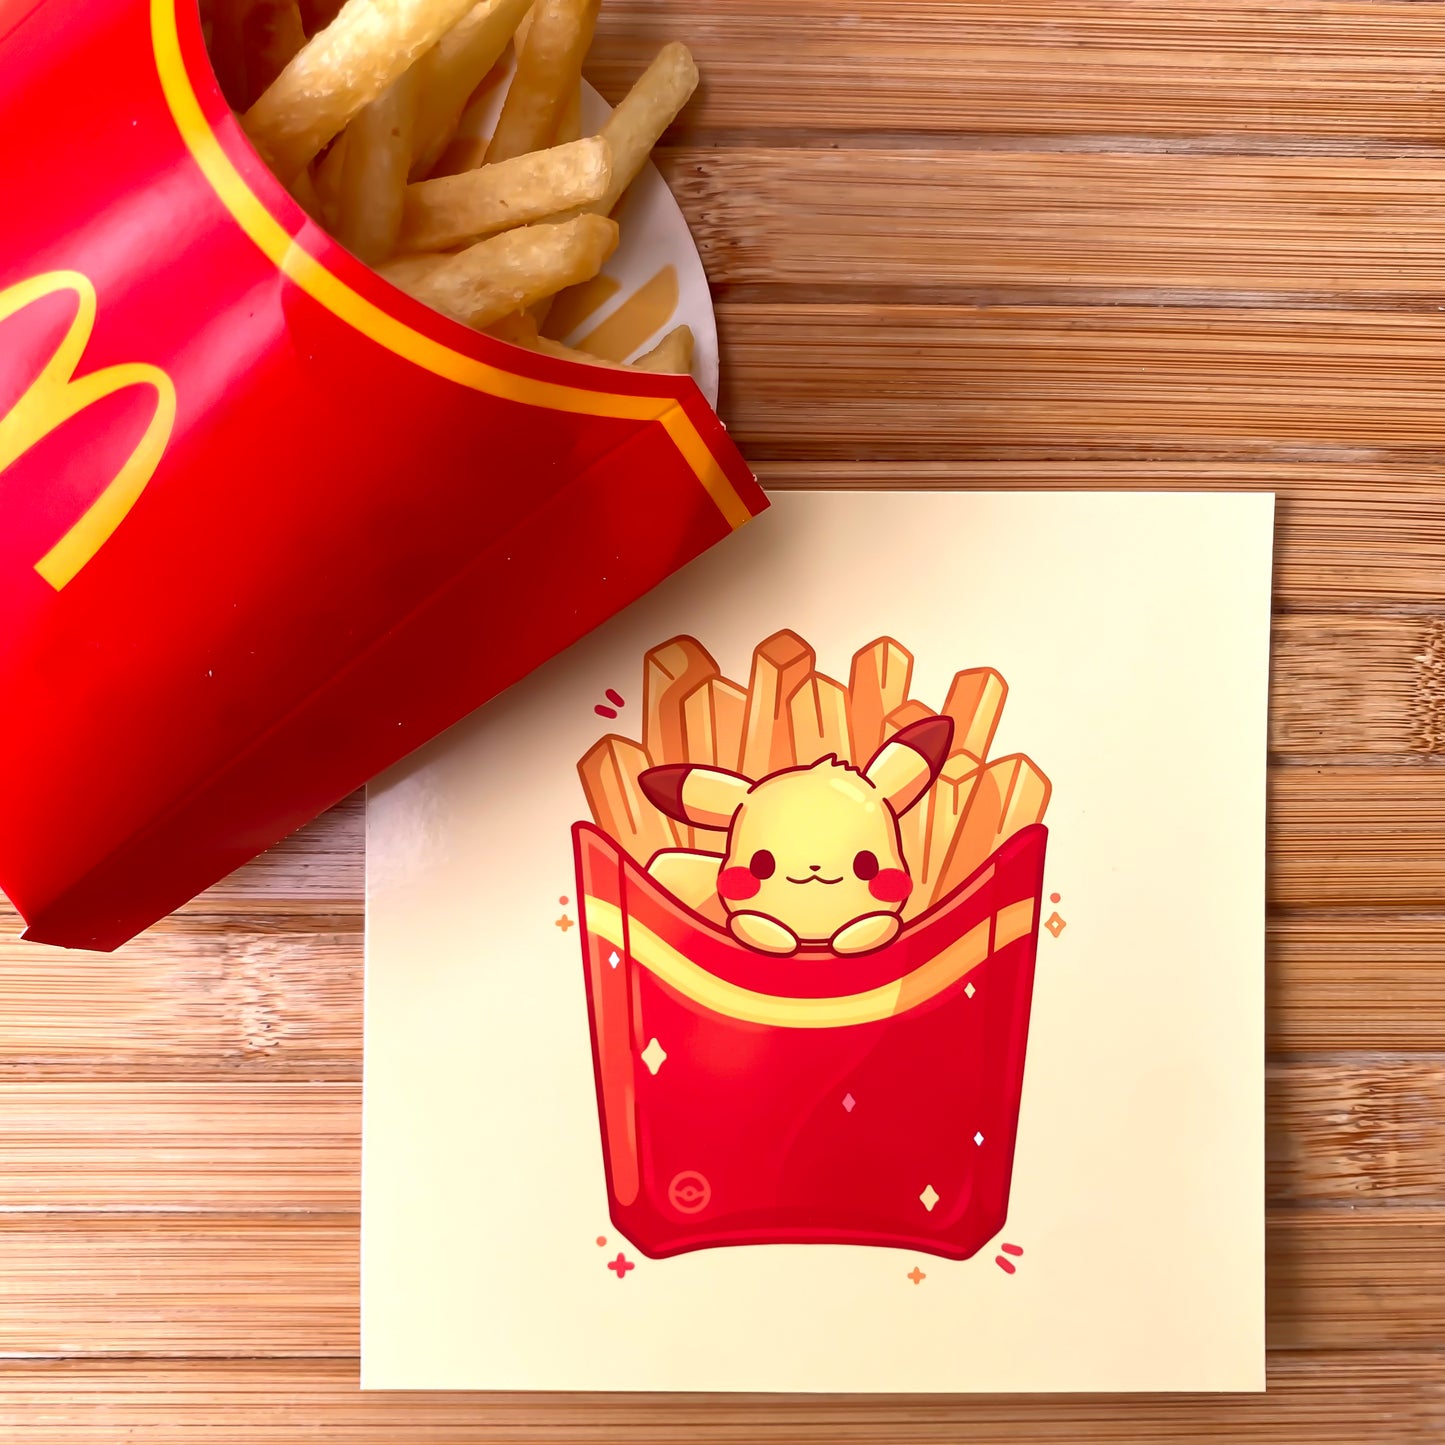 Pikachu Fries Art Print